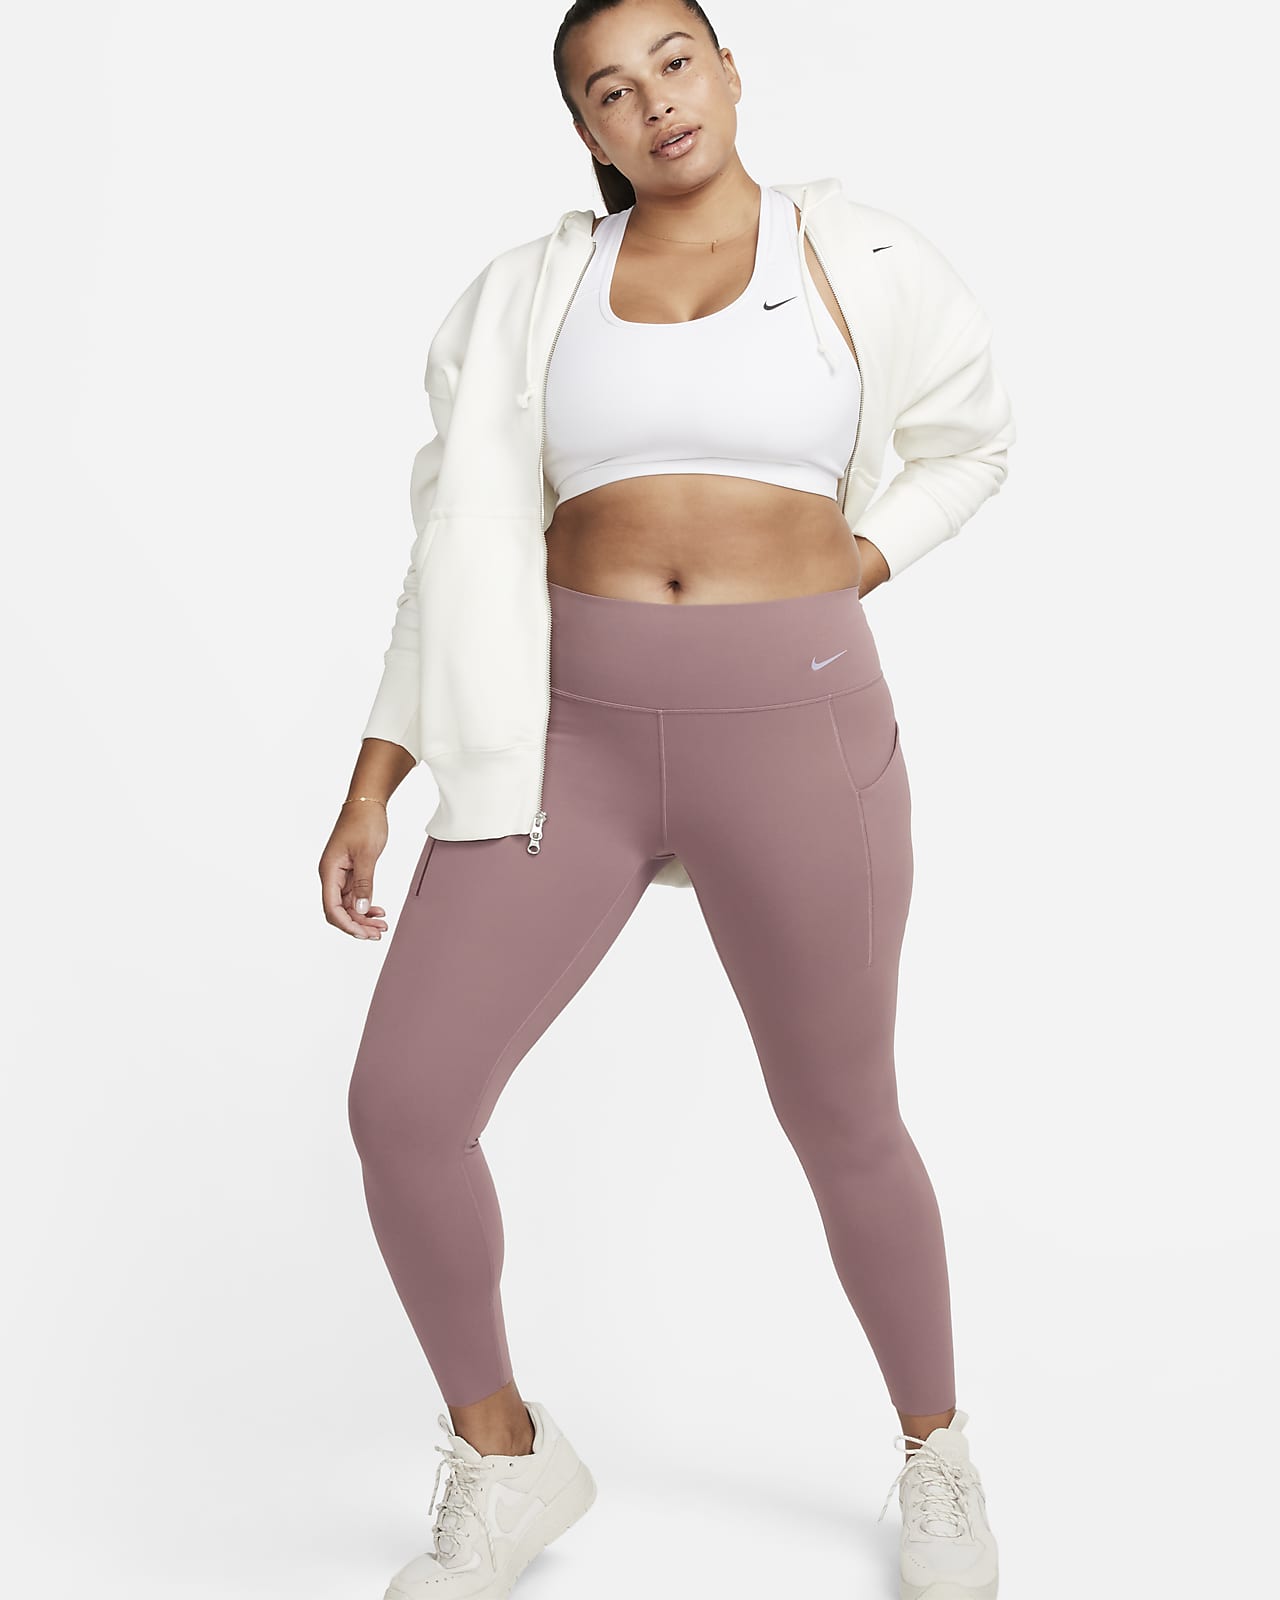 Nike Universa leggings i 7/8 lengde med middels støtte, mellomhøyt liv og lommer til dame